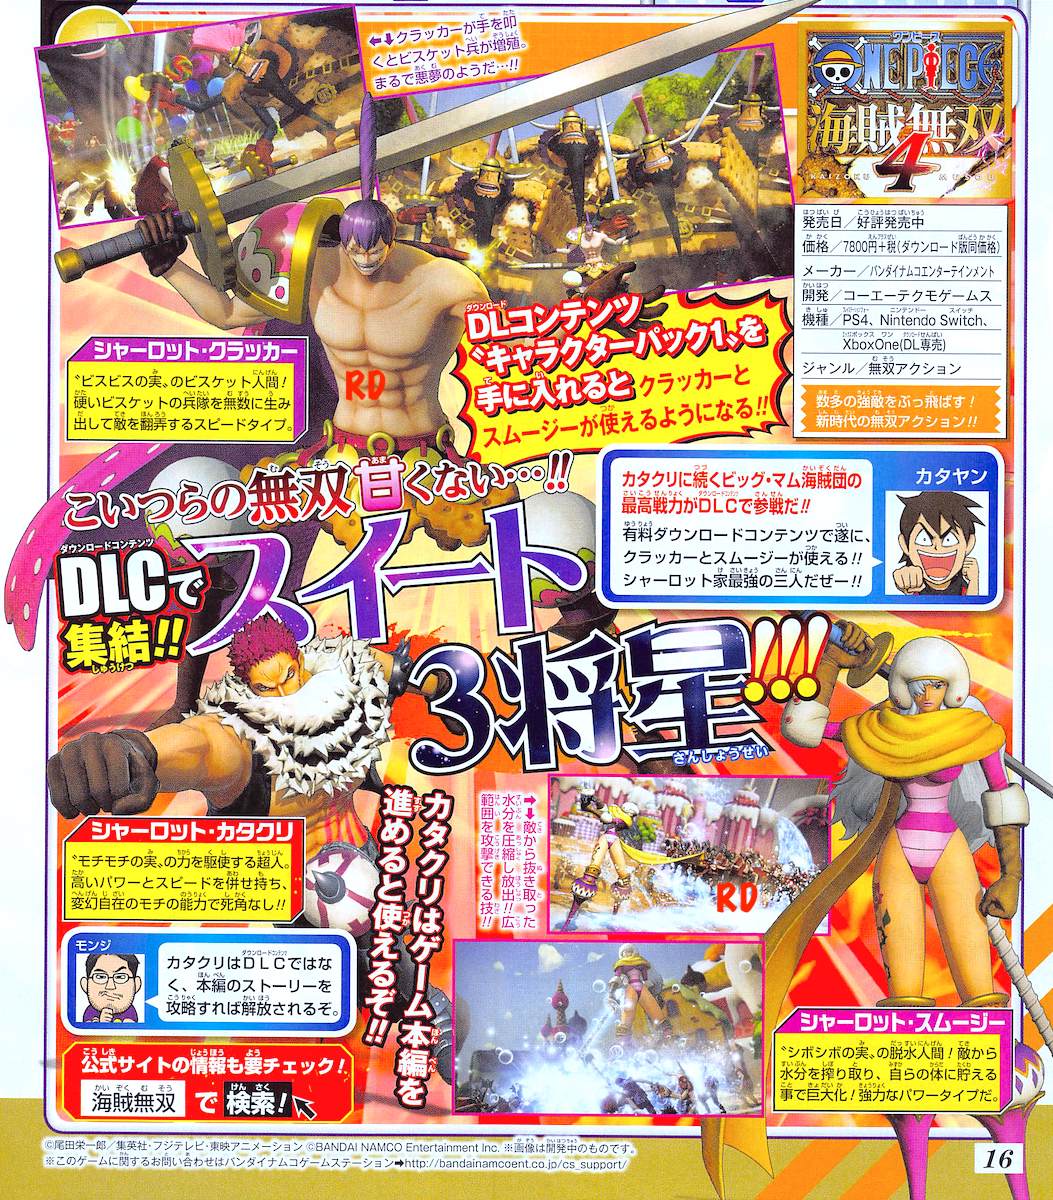 One Piece Pirate Warriors 4 Ps4 Xo Ns Pc 26 De Marzo De Pagina 17 Foro De One Piece Pirateking